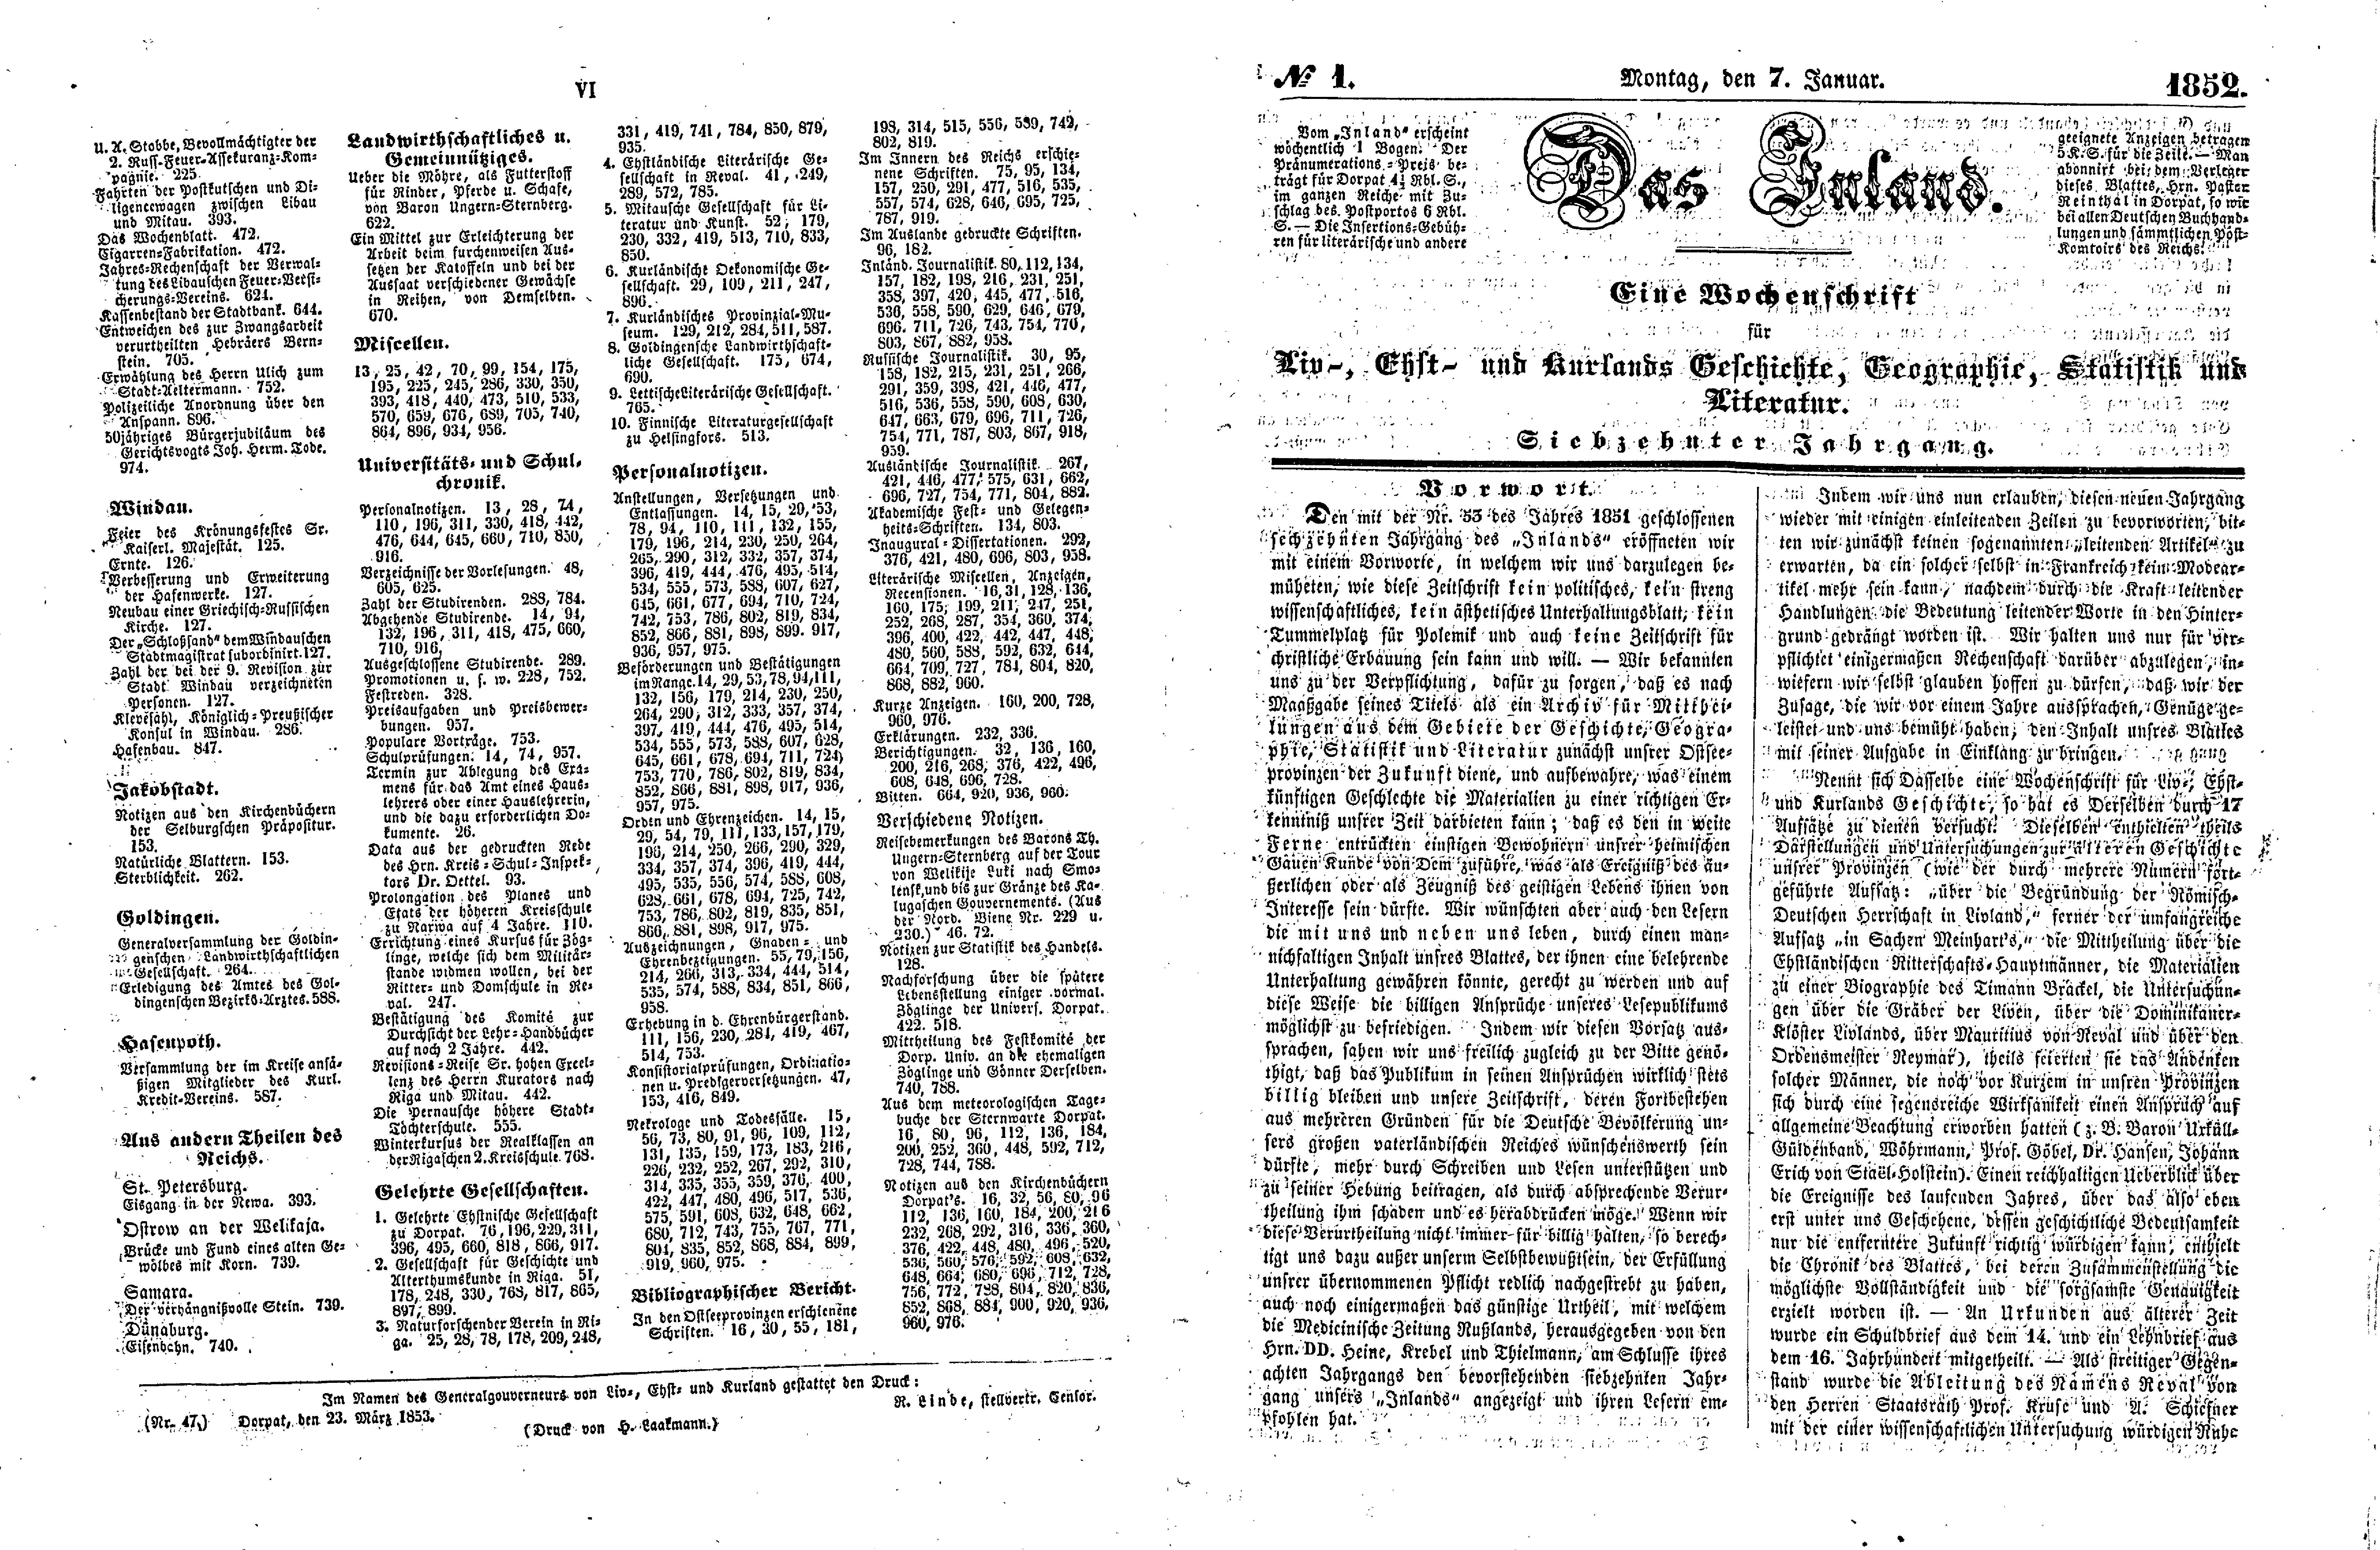 Das Inland [17] (1852) | 4. (VI-2) Указатель, Основной текст